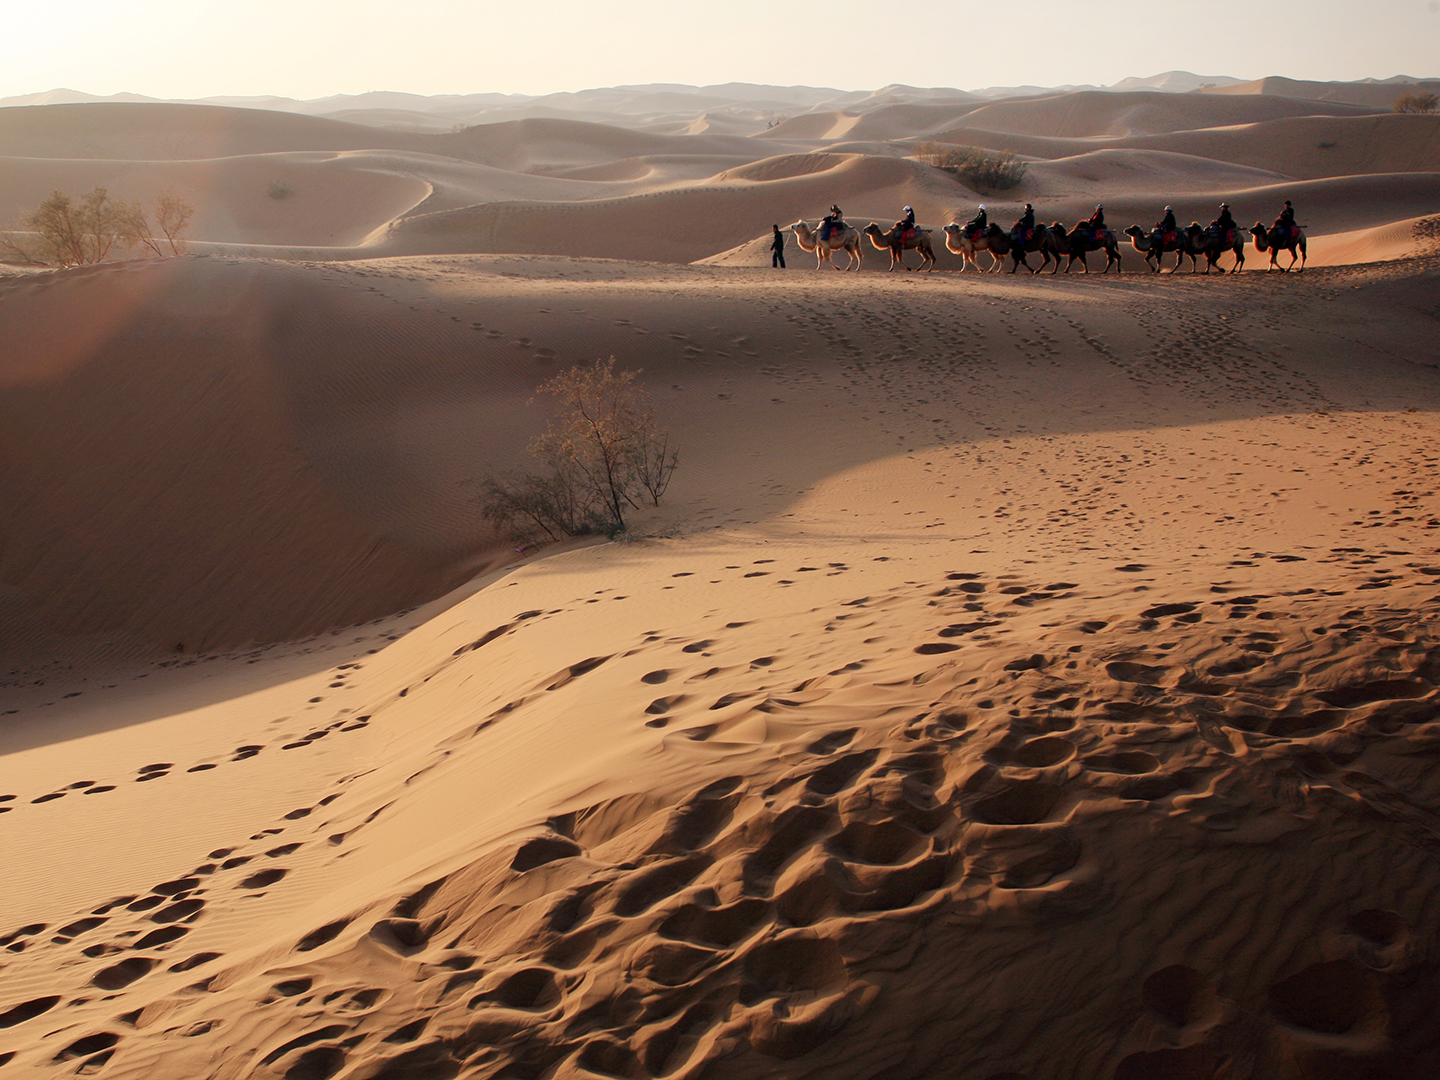 【携程攻略】中卫沙坡头景点,沙坡头旅游区总体来说很值得去一趟，尤其是带孩子一起去沙漠中游玩，…